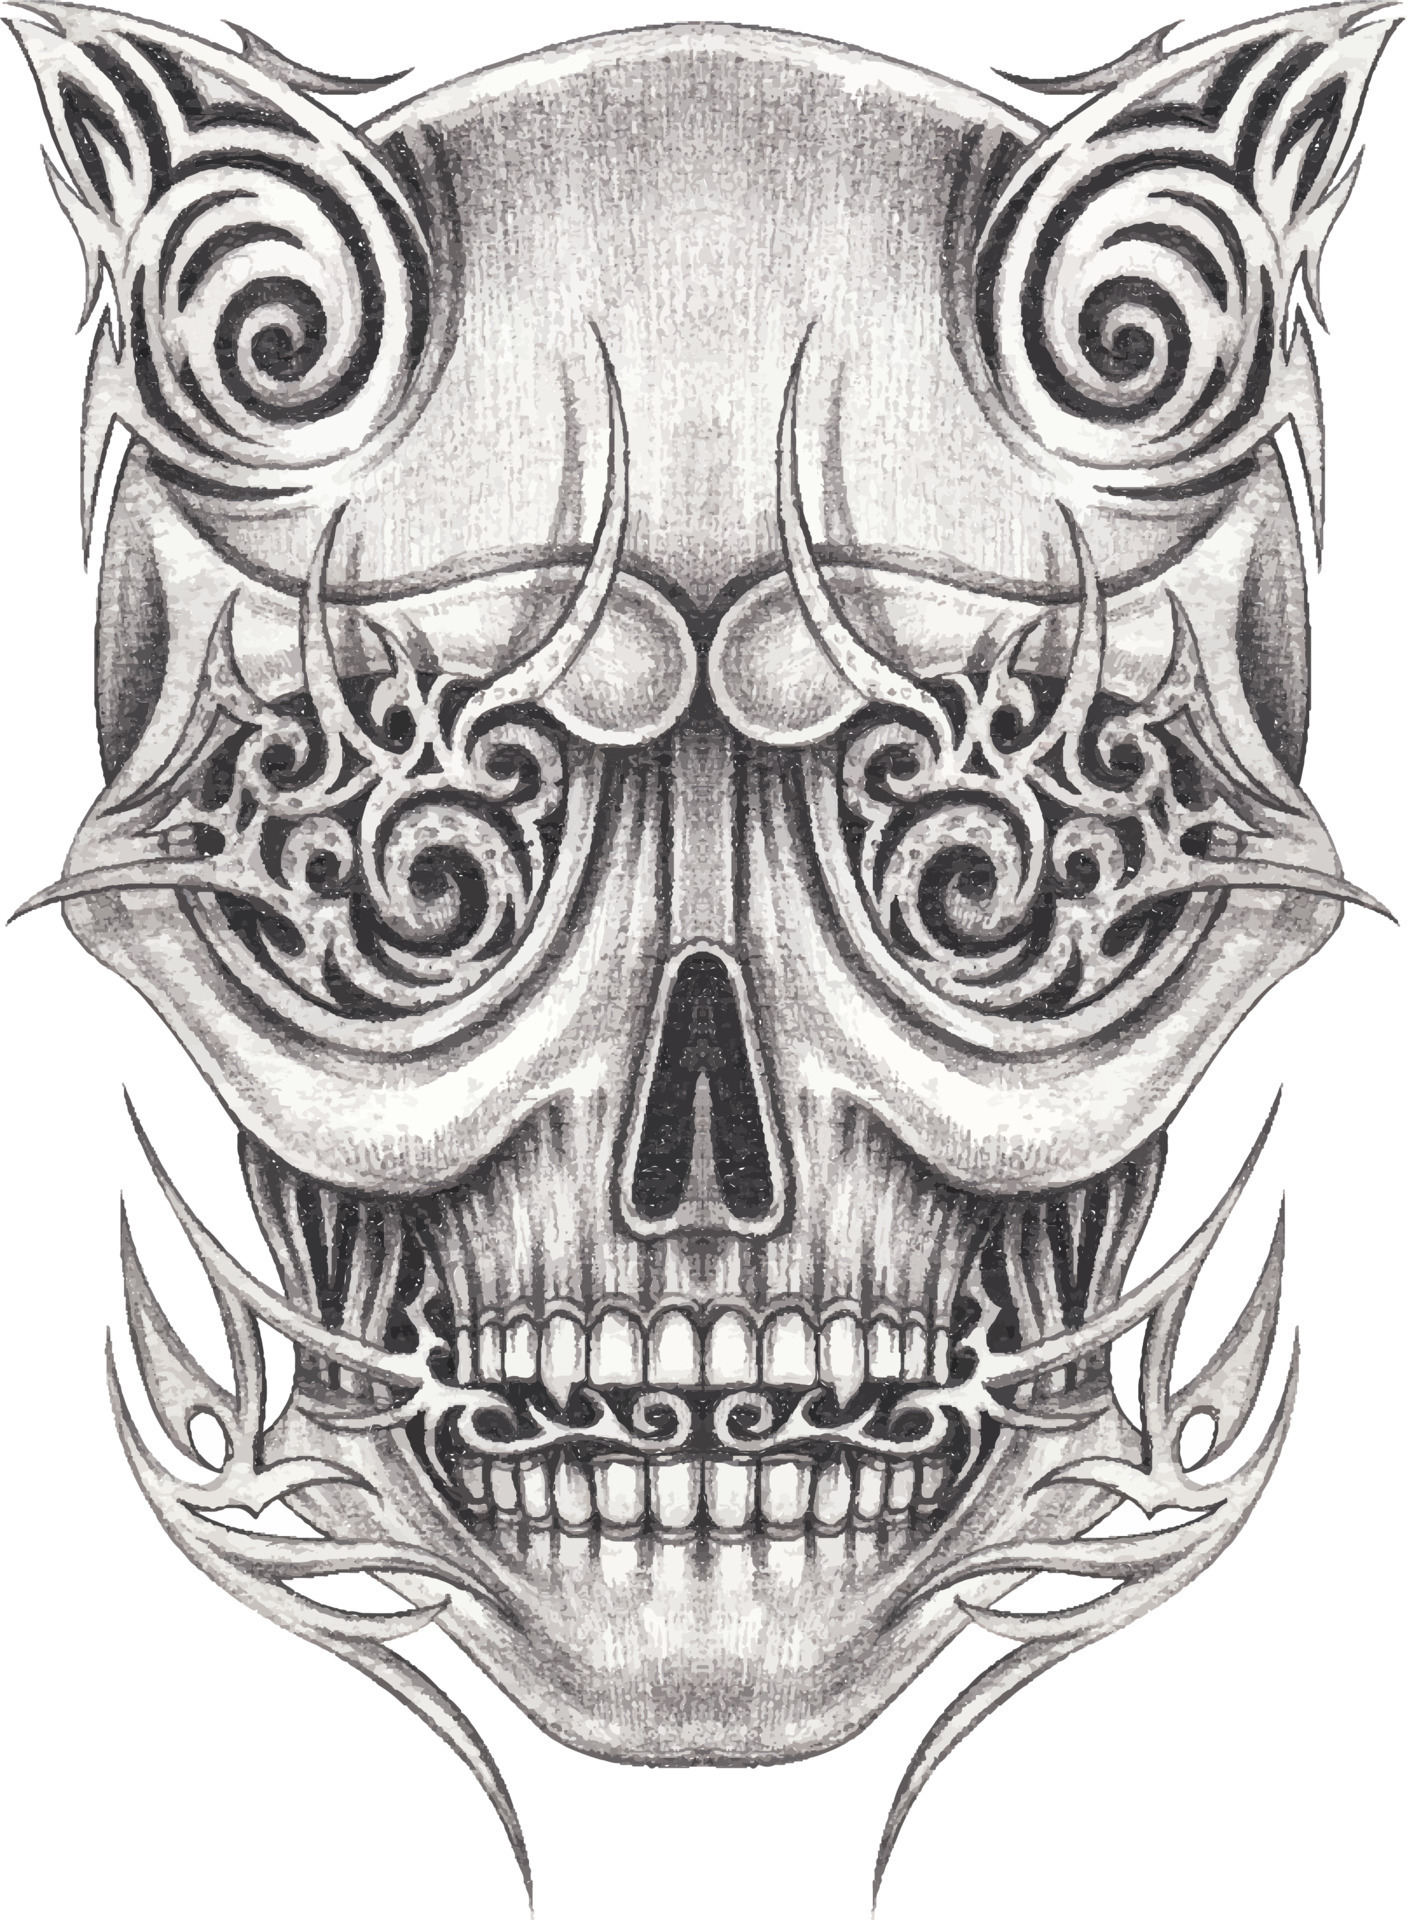 skull tattoo drawings ideas